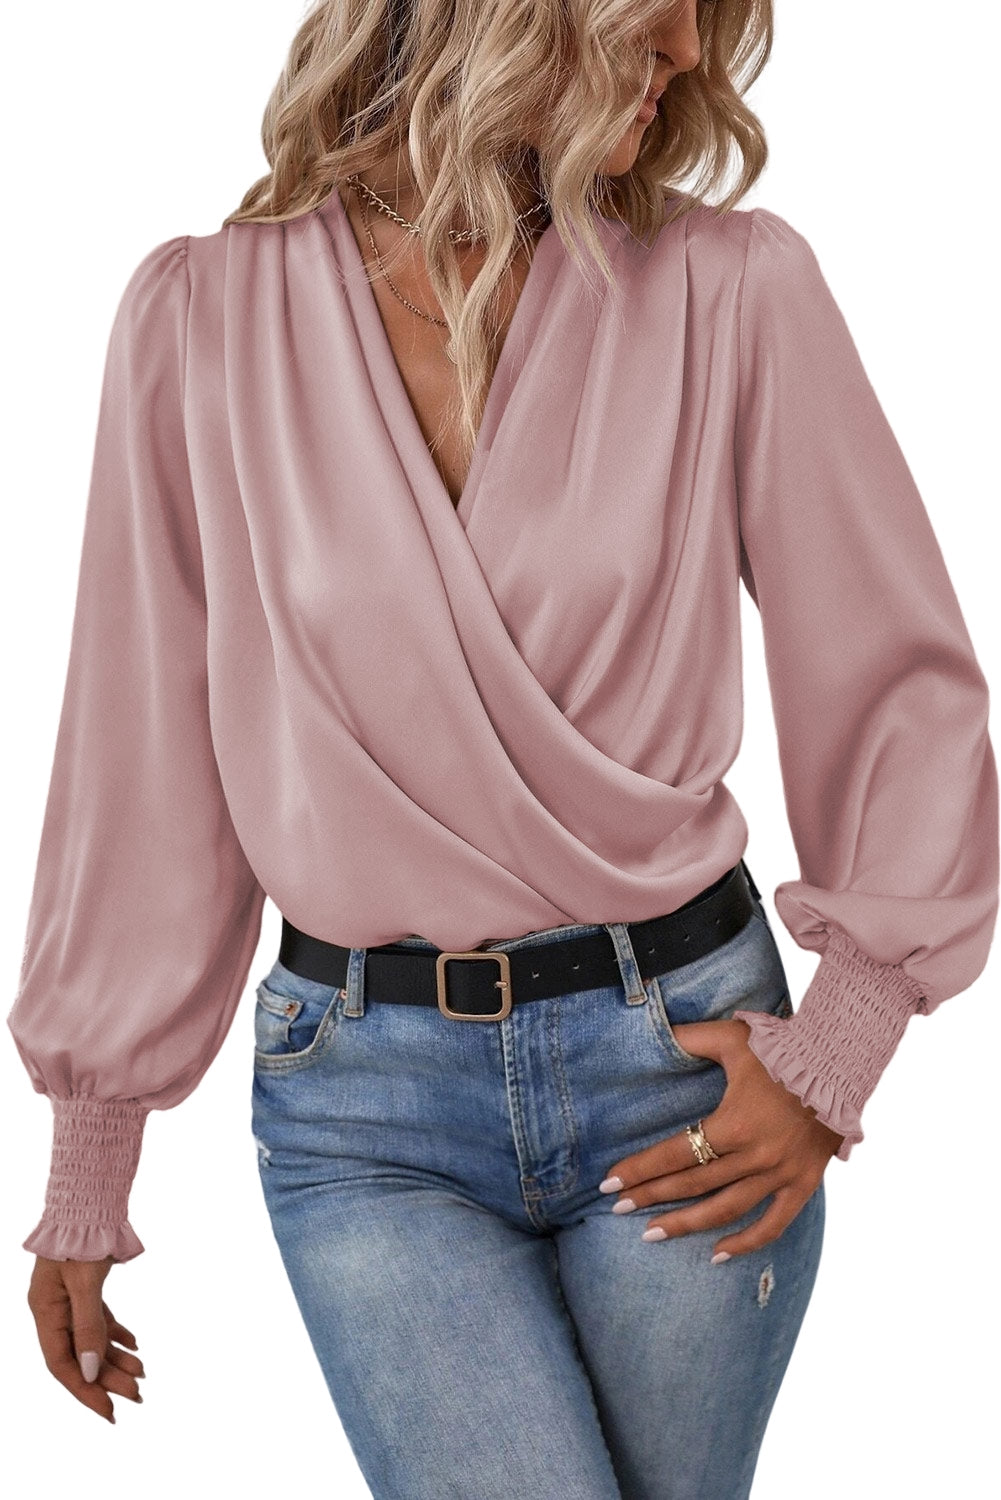 Kaki enobarvna bluza z ovratnikom in drapiranimi manšetami